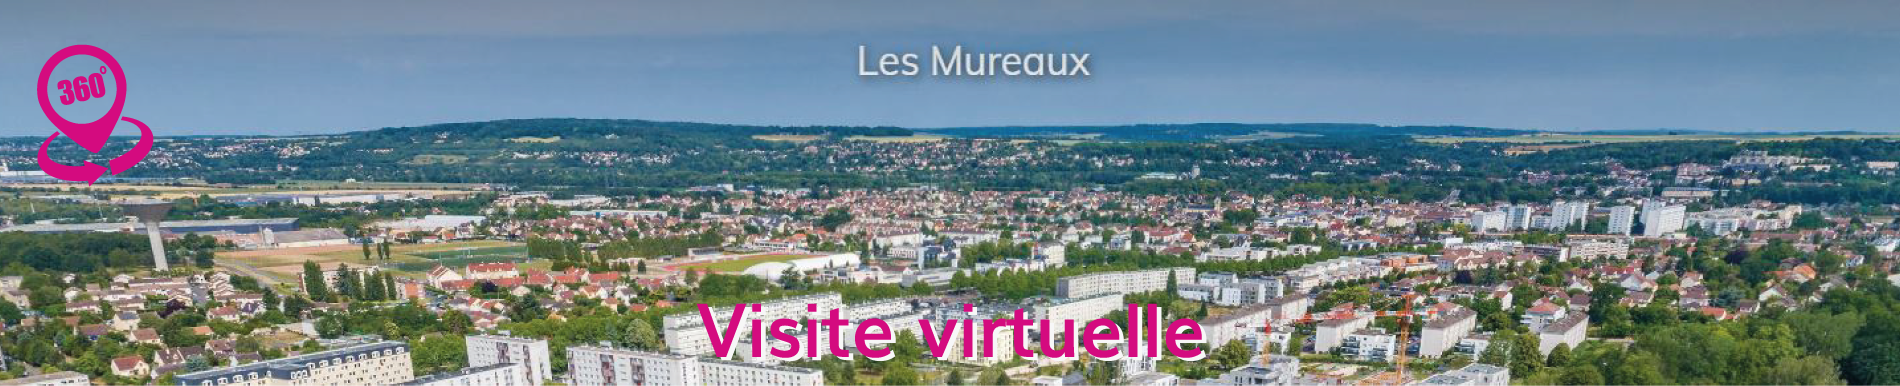 Visite virtuelle Les mureaux